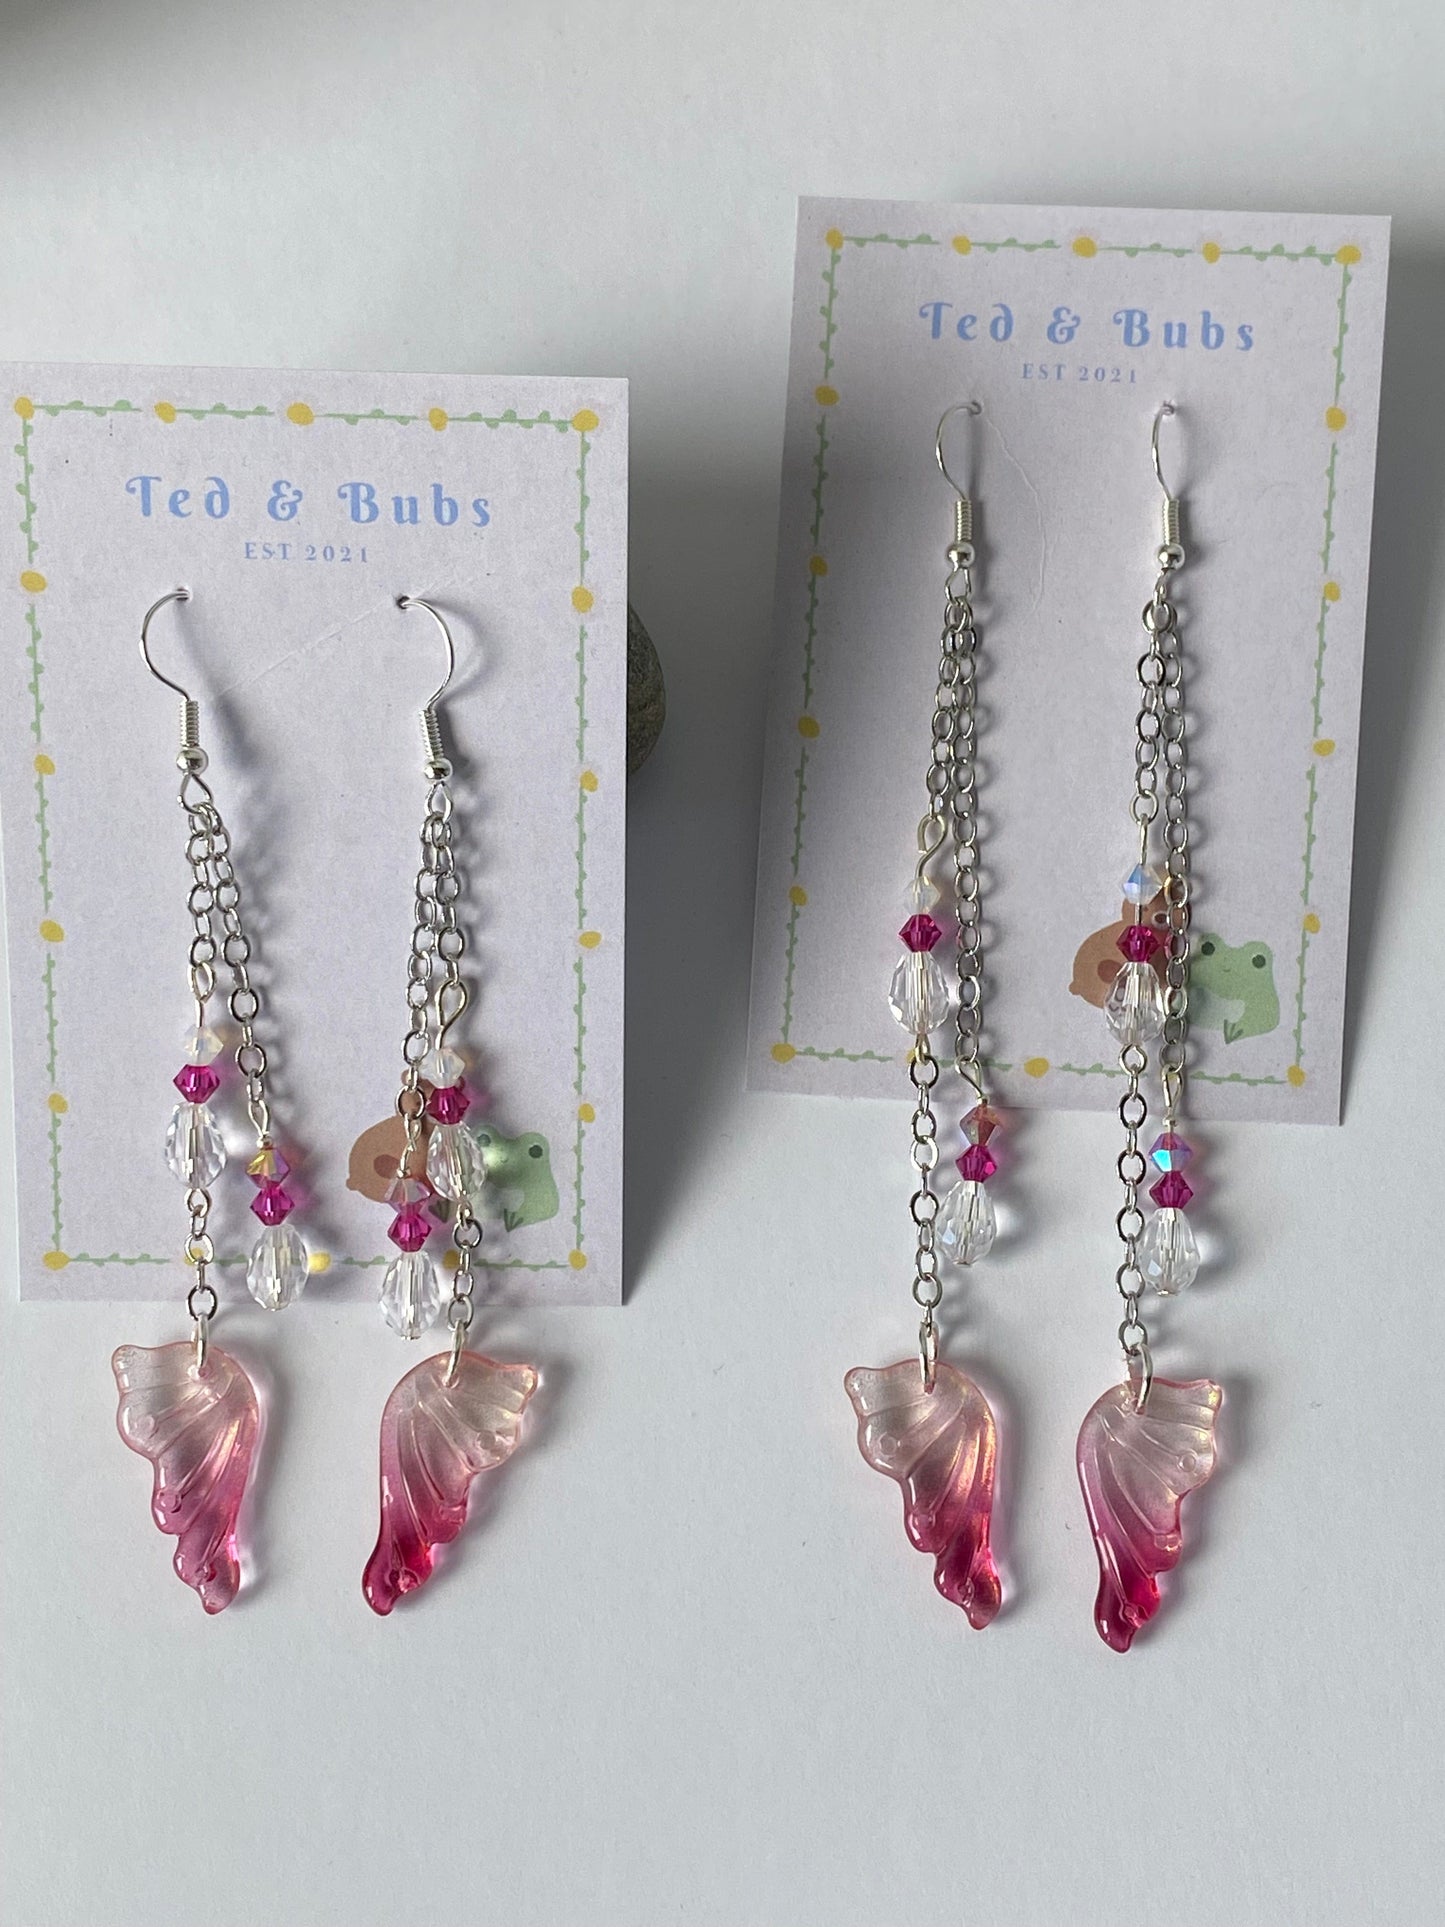 Ted & Bubs Earrings Fairy Wing Earrings - Raspberry Silver